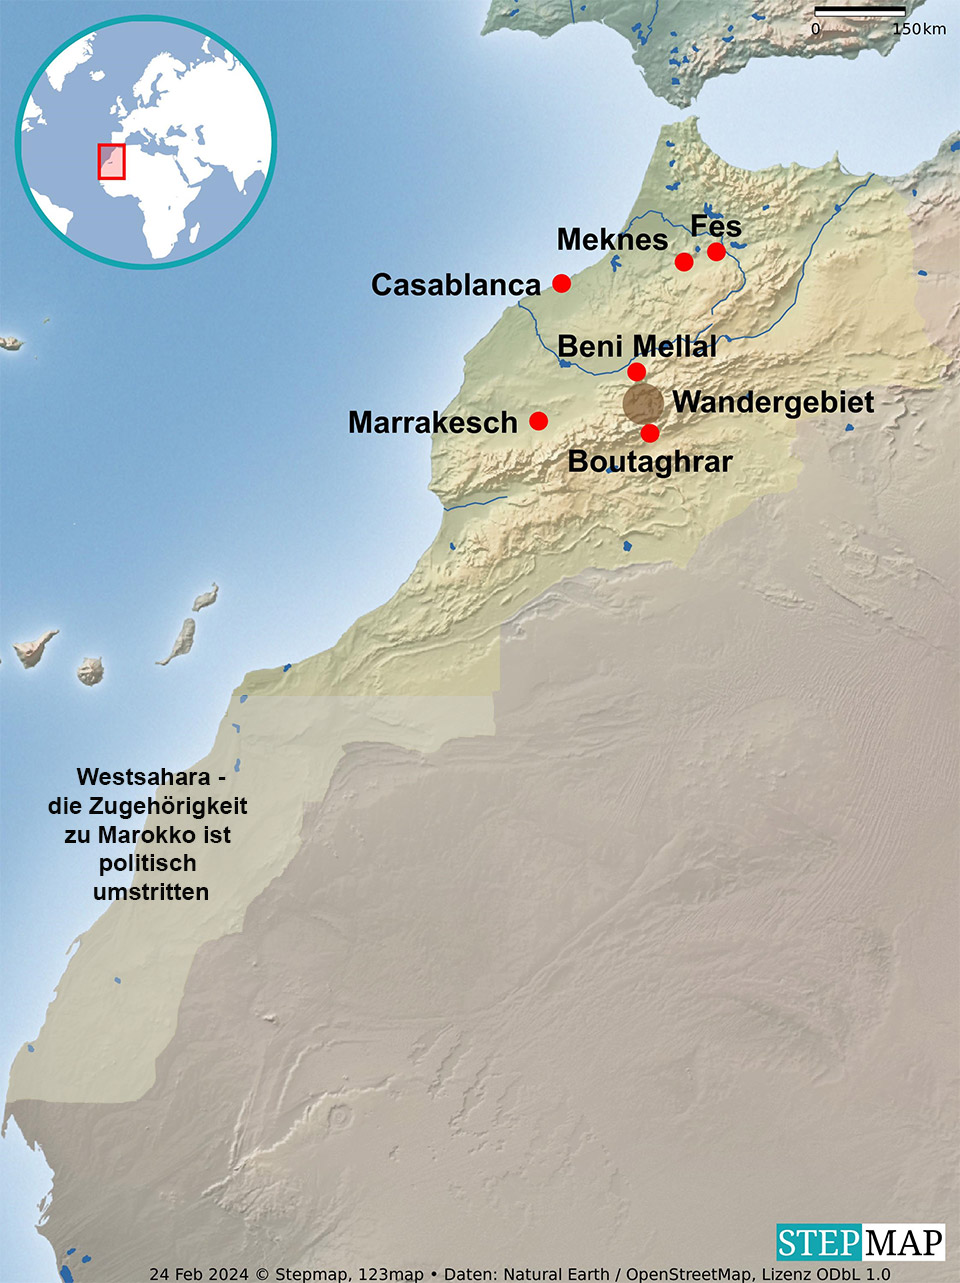 Uebersichtskarte von Marokko incl. der politisch umstritttenen Westsahara